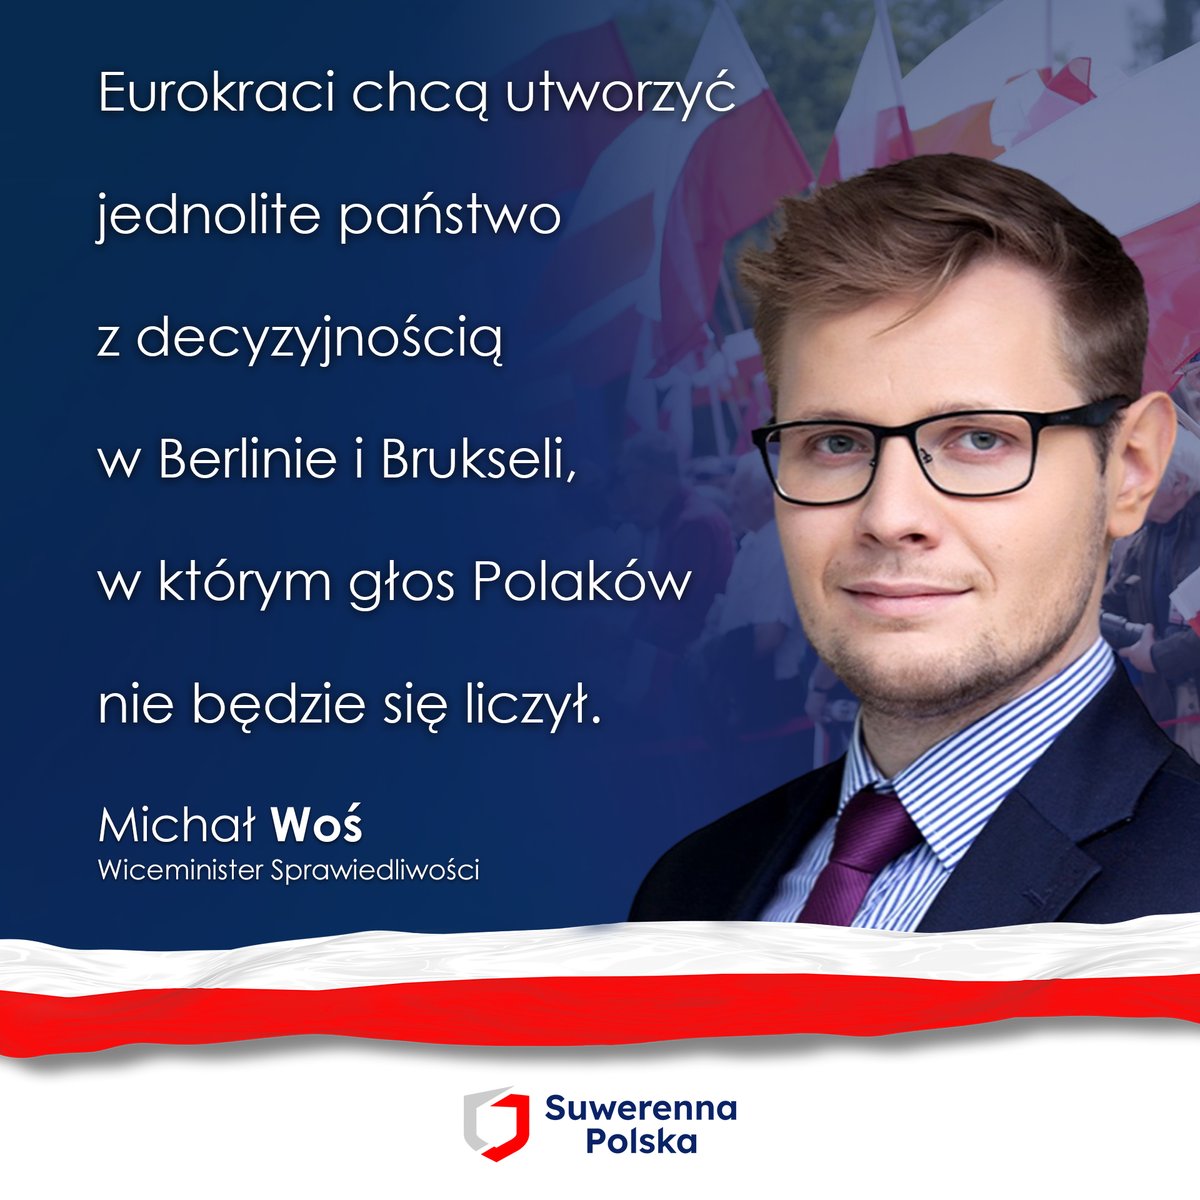 Dopóki rządzi Zjednoczona Prawica, Polska nie będzie unijnym landem.